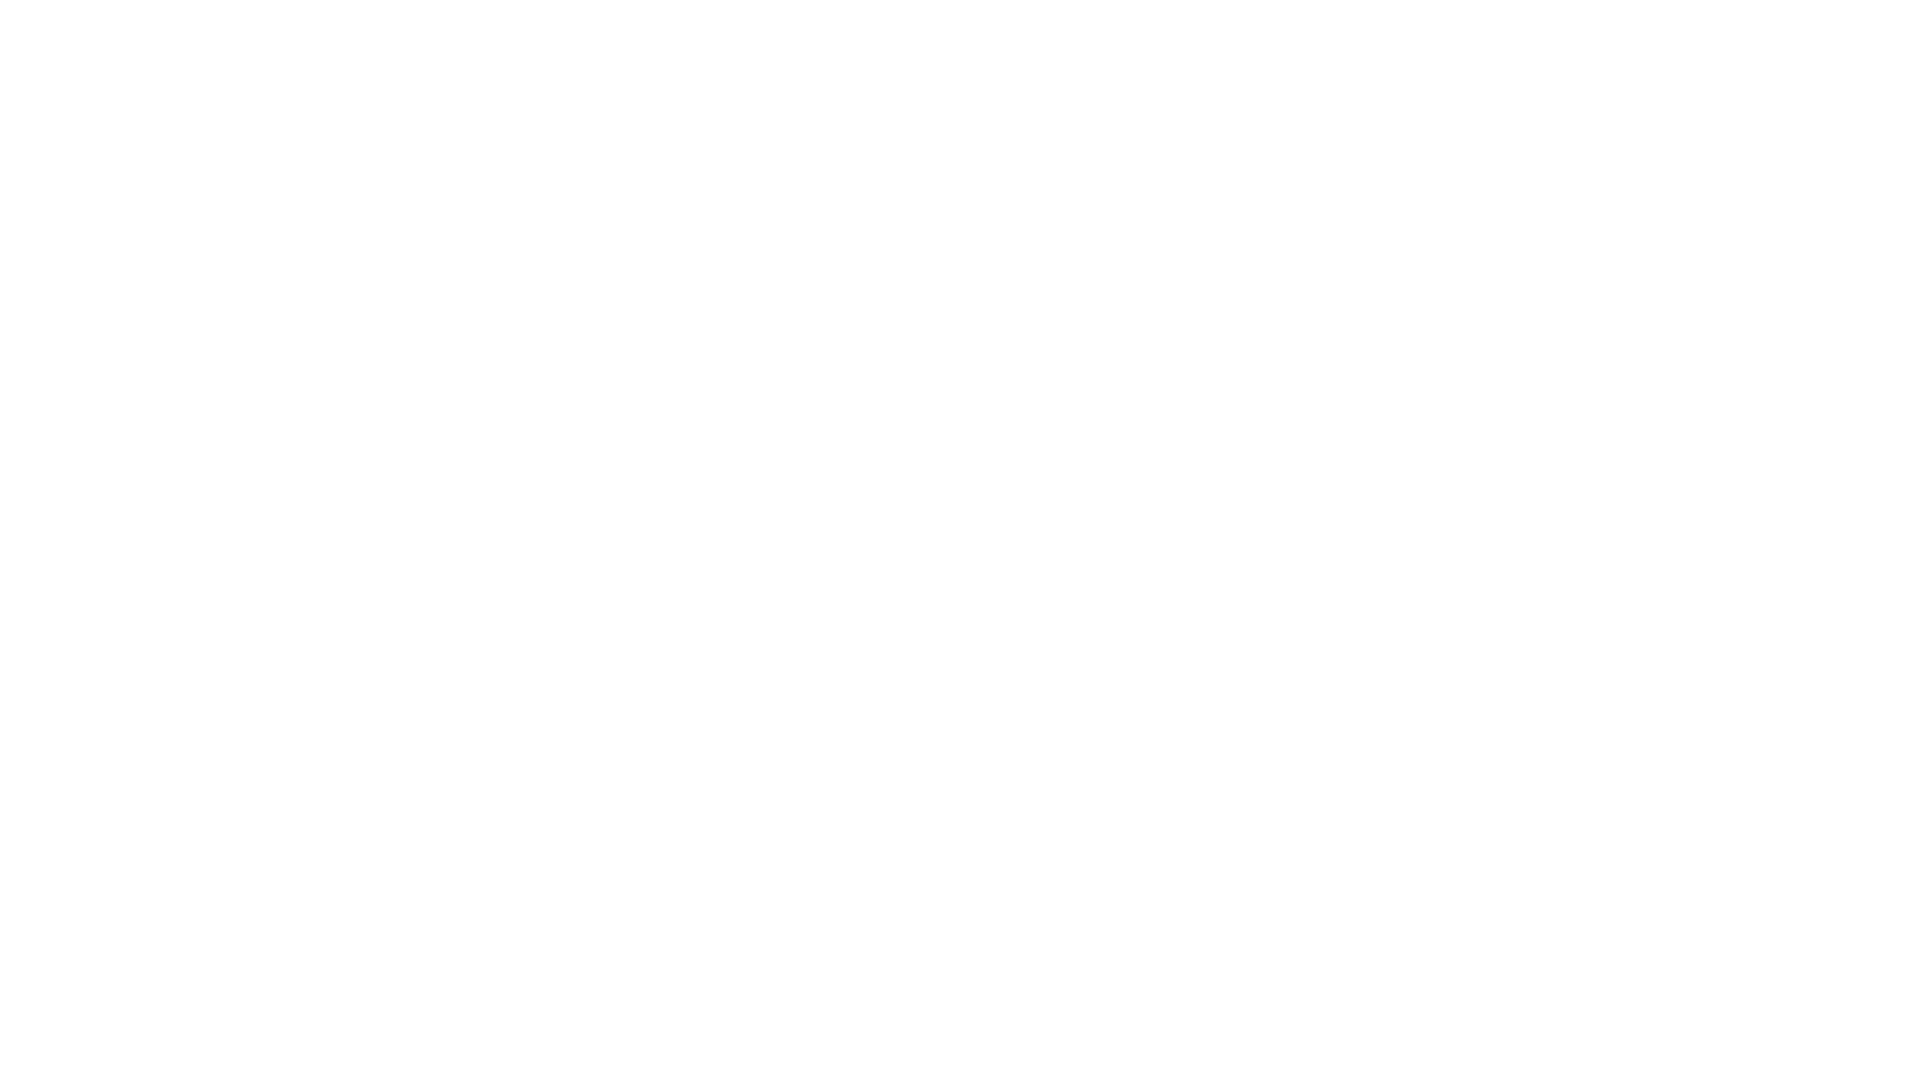 Paradigm Health Solutions